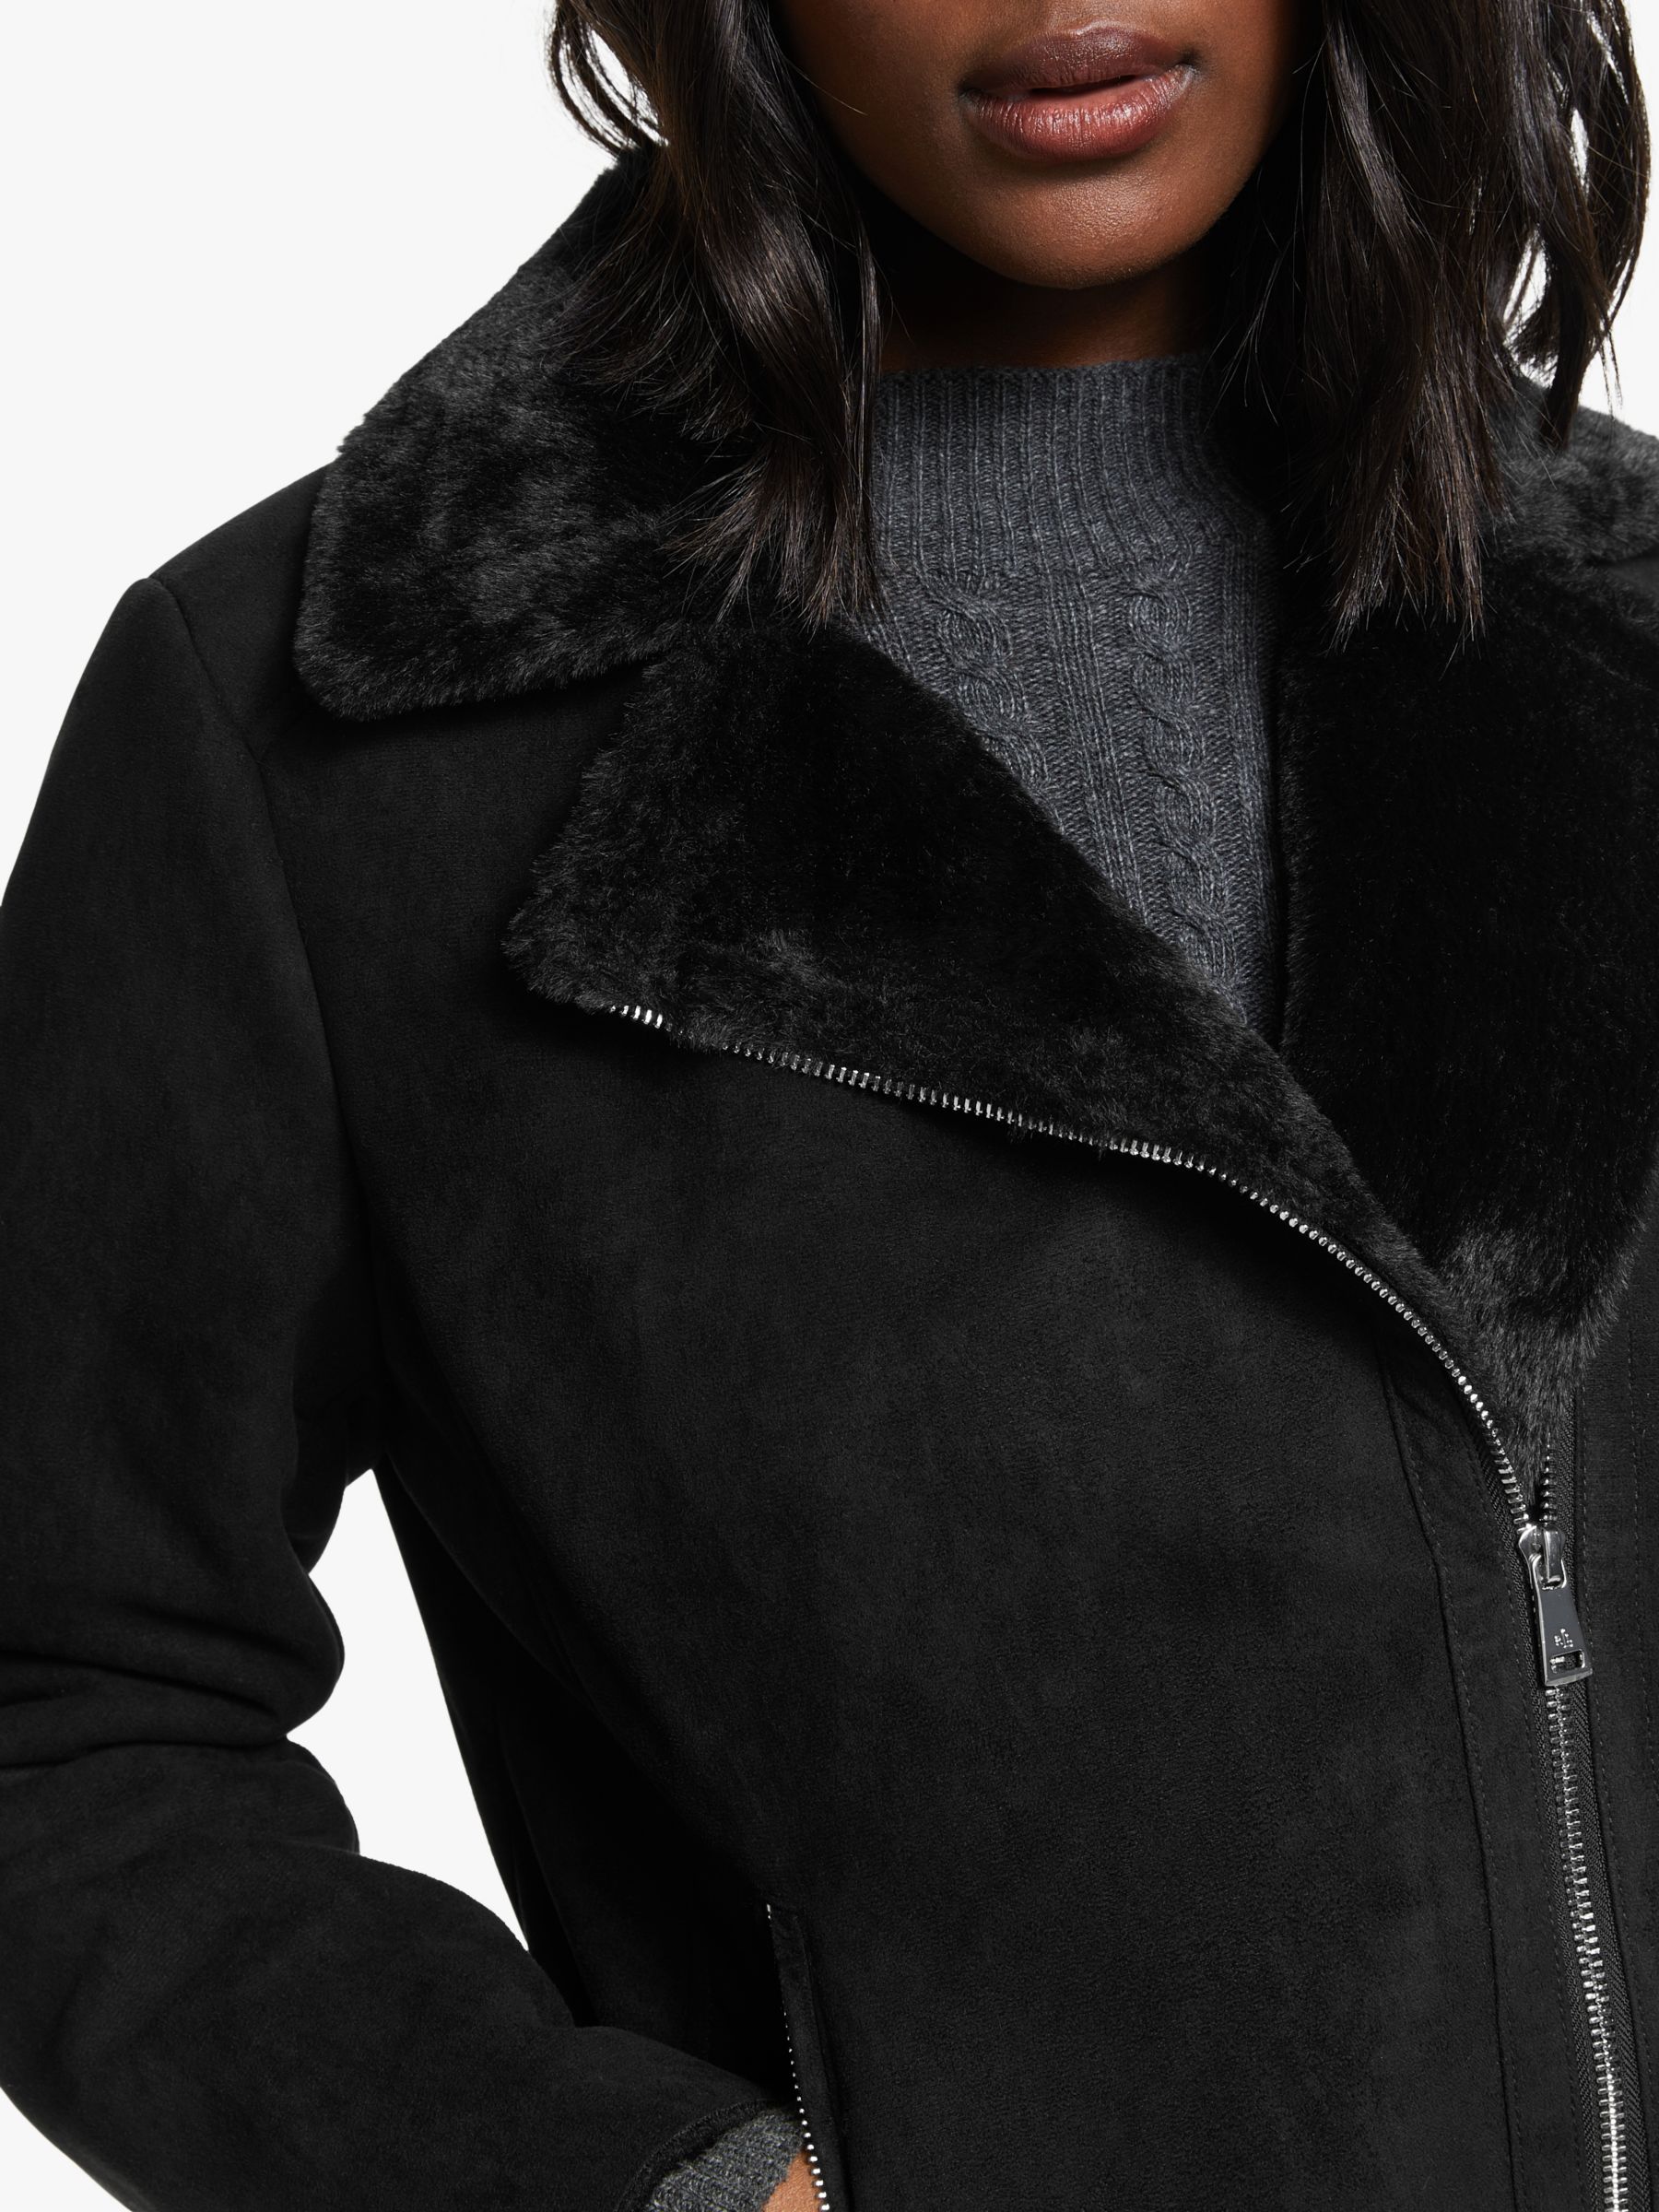 ralph lauren black leather jacket